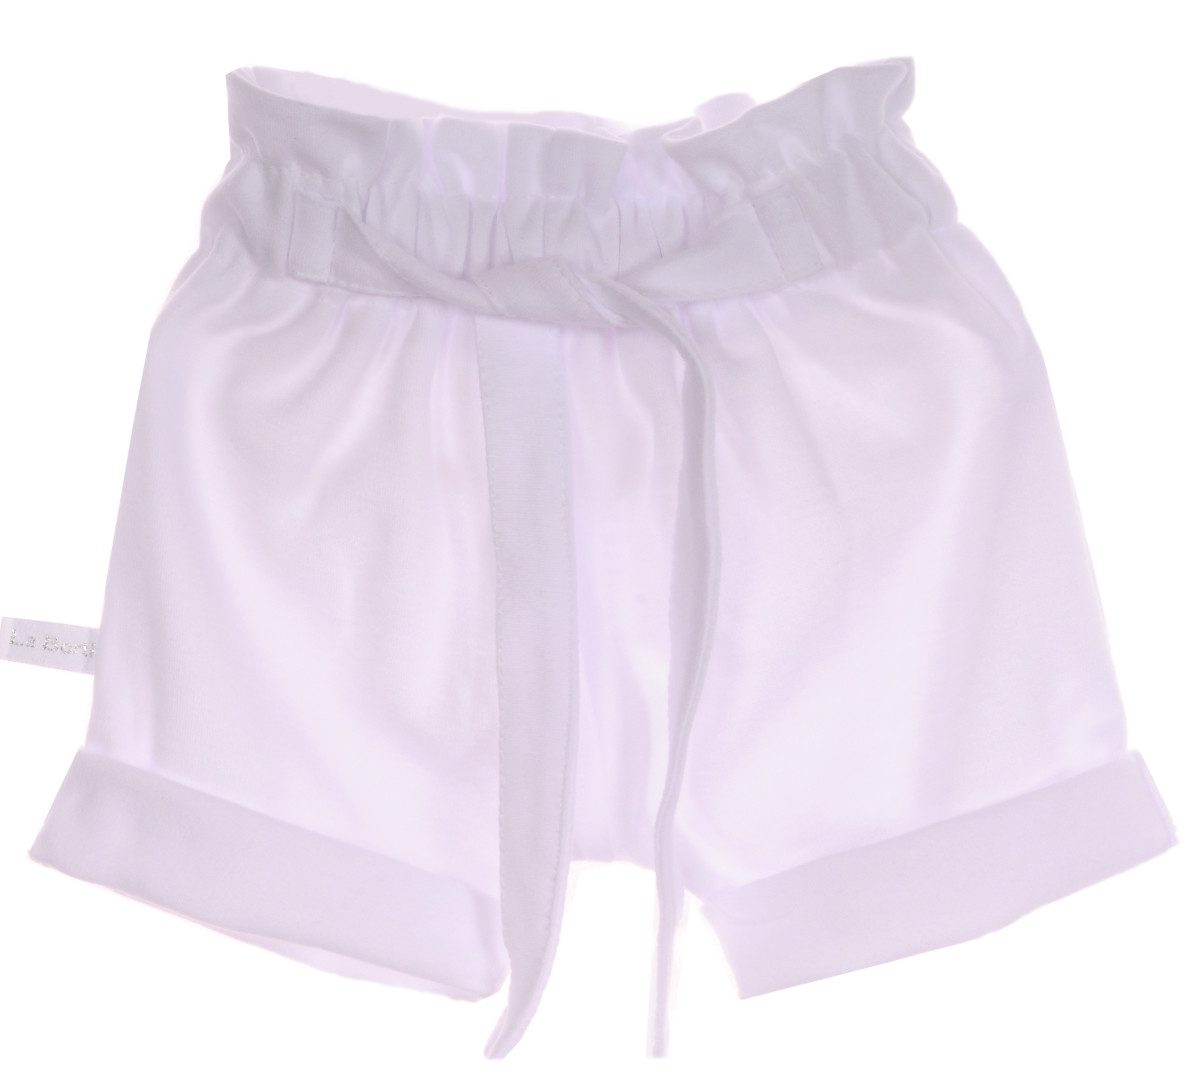 La Bortini Shorts Sommer Shorts für Babys und Kinder in Weiß, 50 56 62 68 74 80 86 92 98